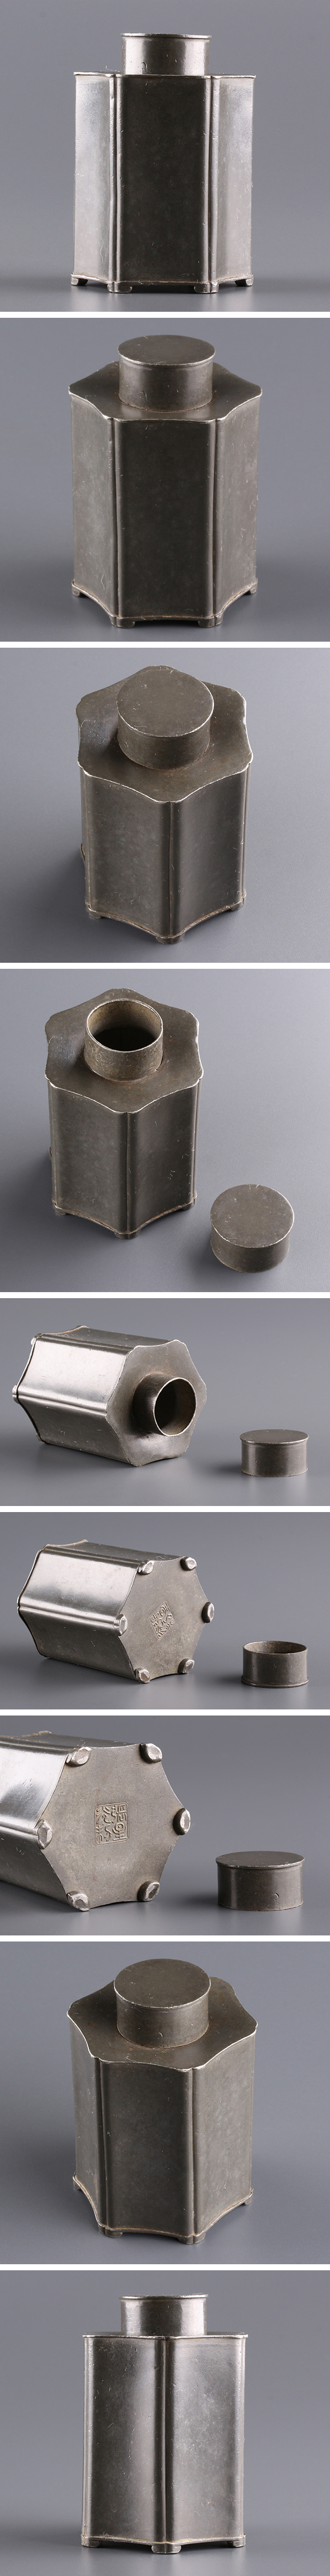 鉄製 鉄砲の筒で作られている 珍品 自在 | www.ddechuquisaca.gob.bo